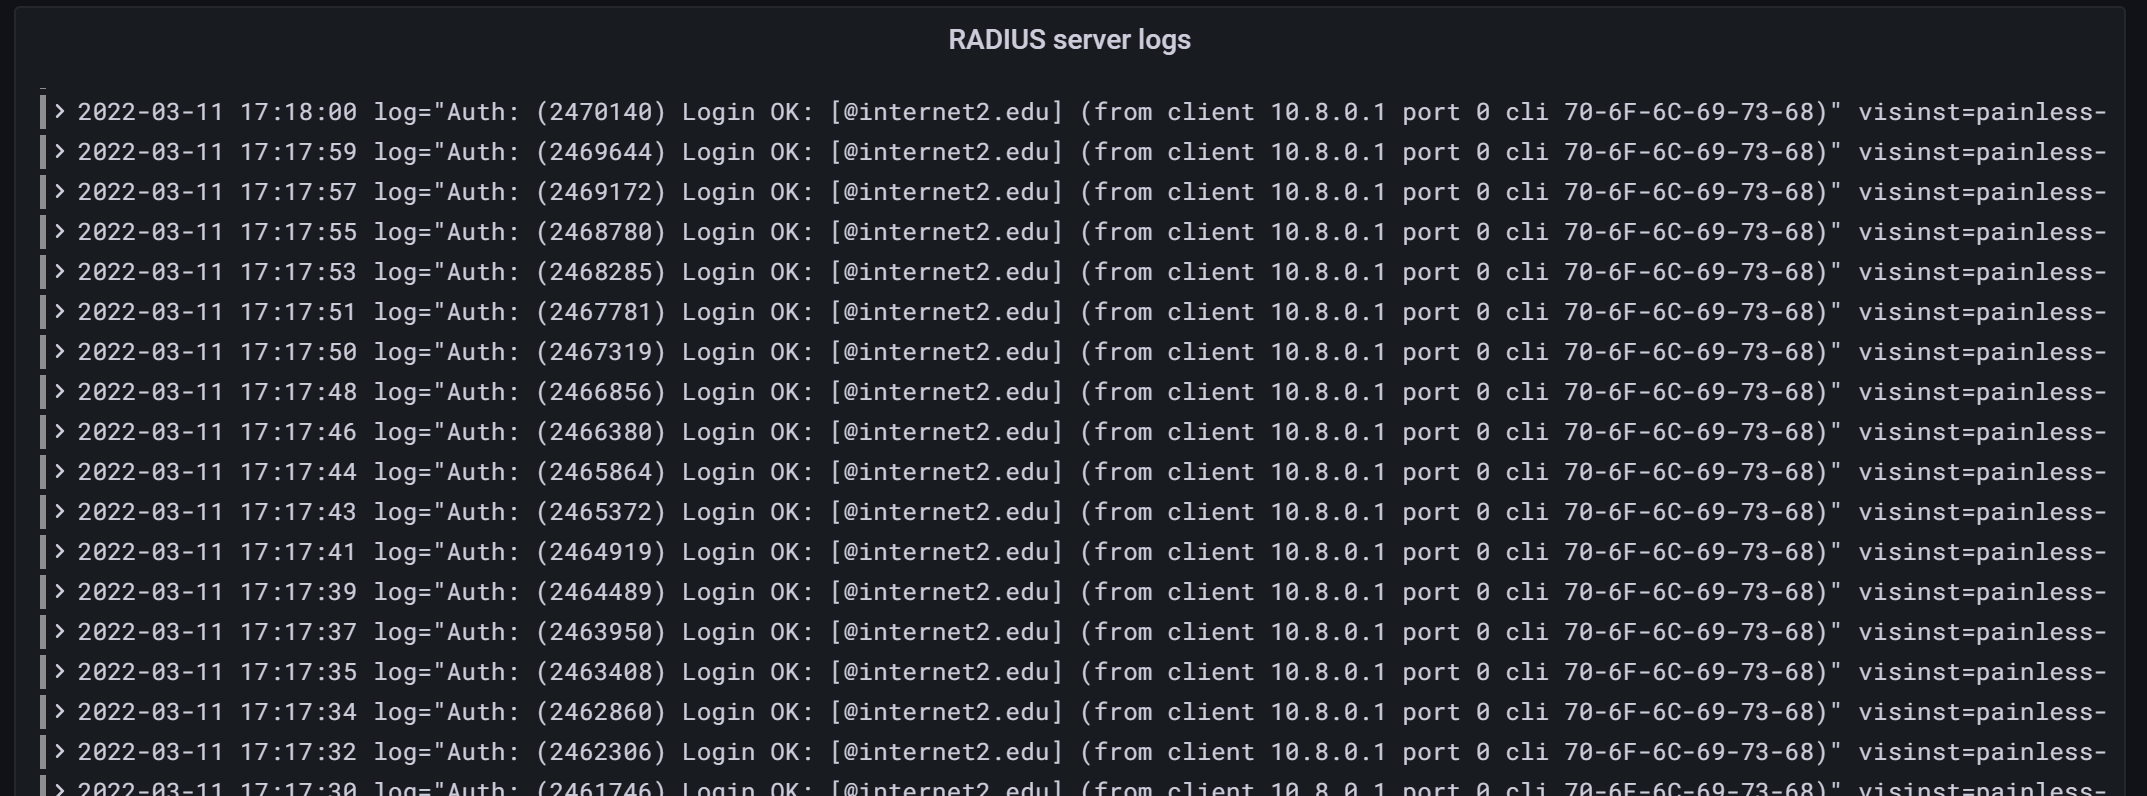 RADIUS server logs